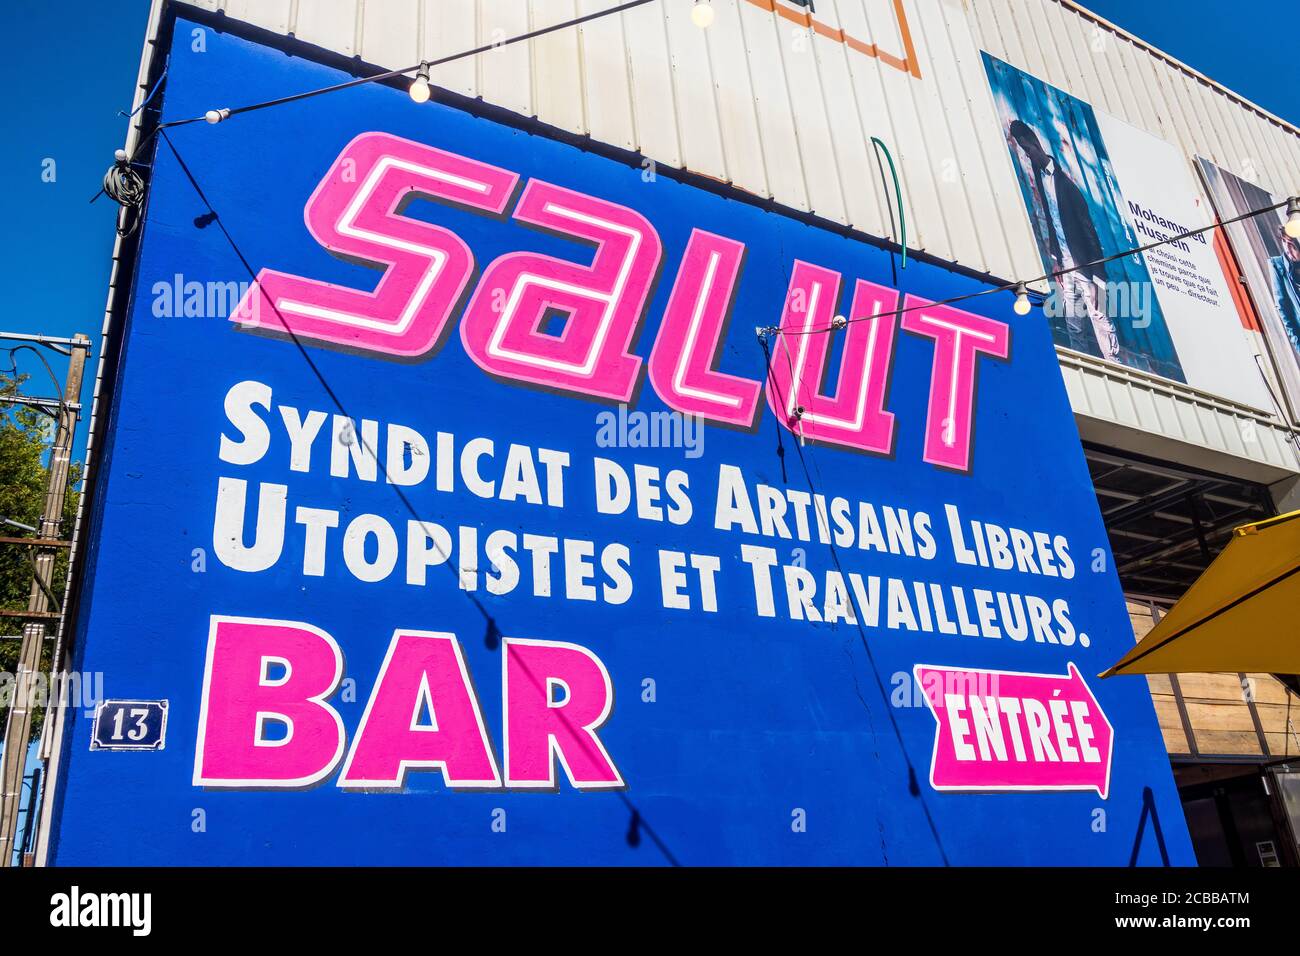 SALUT - 'Syndicat des Artisans Libres Utopistes et Travailleurs' notice on  bar, shops and meeting place, Nantes, Loire-Atlantique, France. Stock Photo